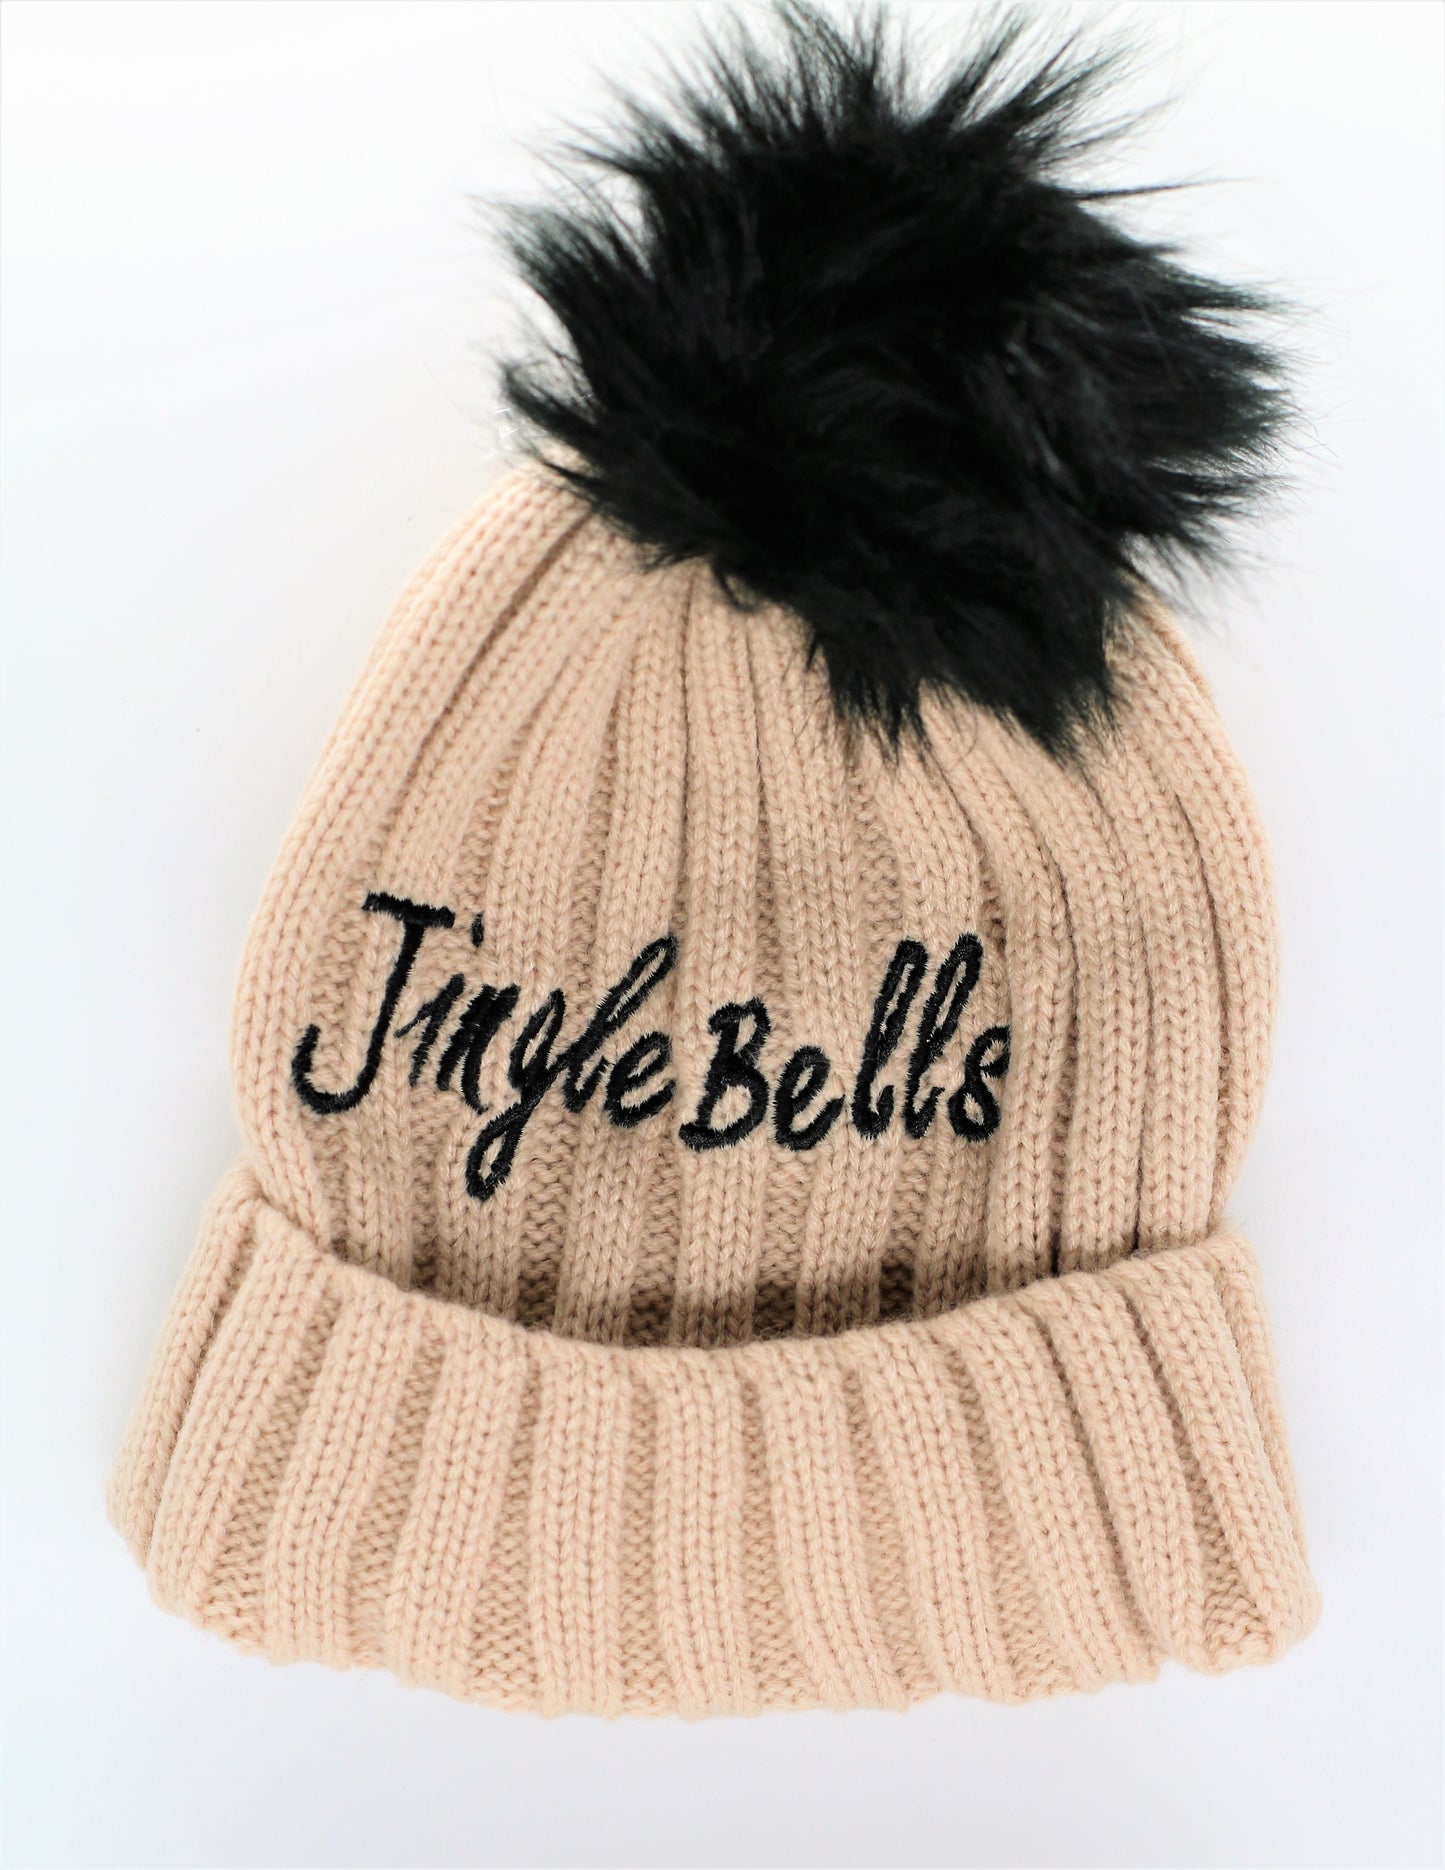 Women's Tan Jingle bells Winter Hat